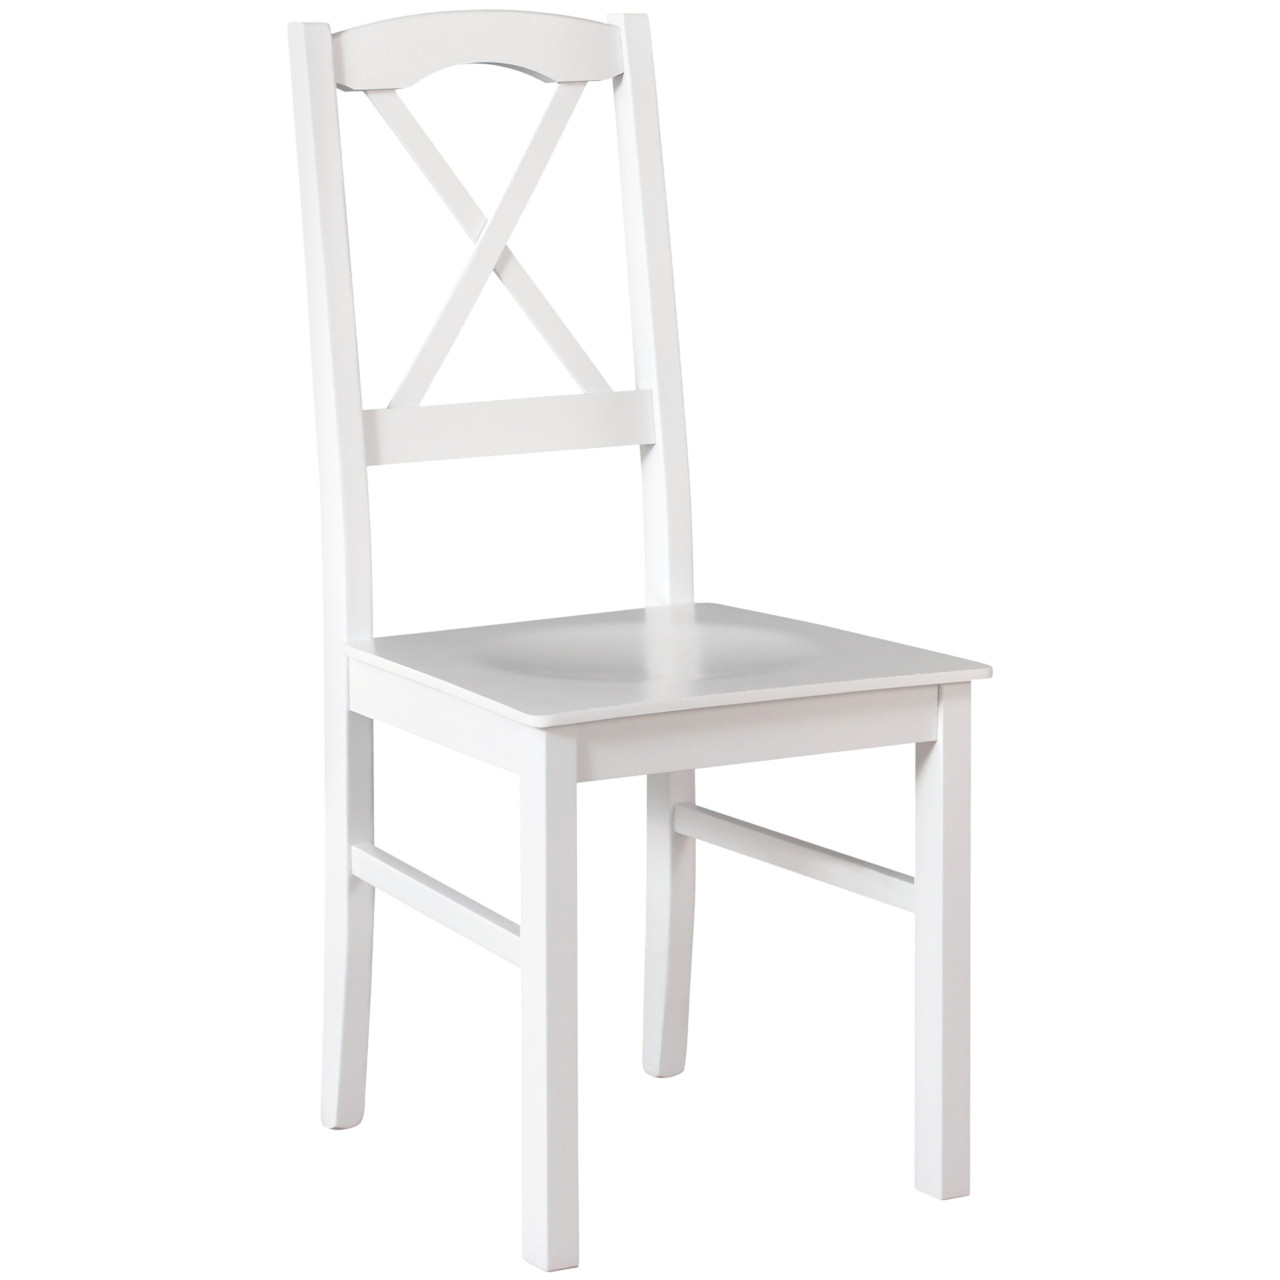 Chair NILO 11D white